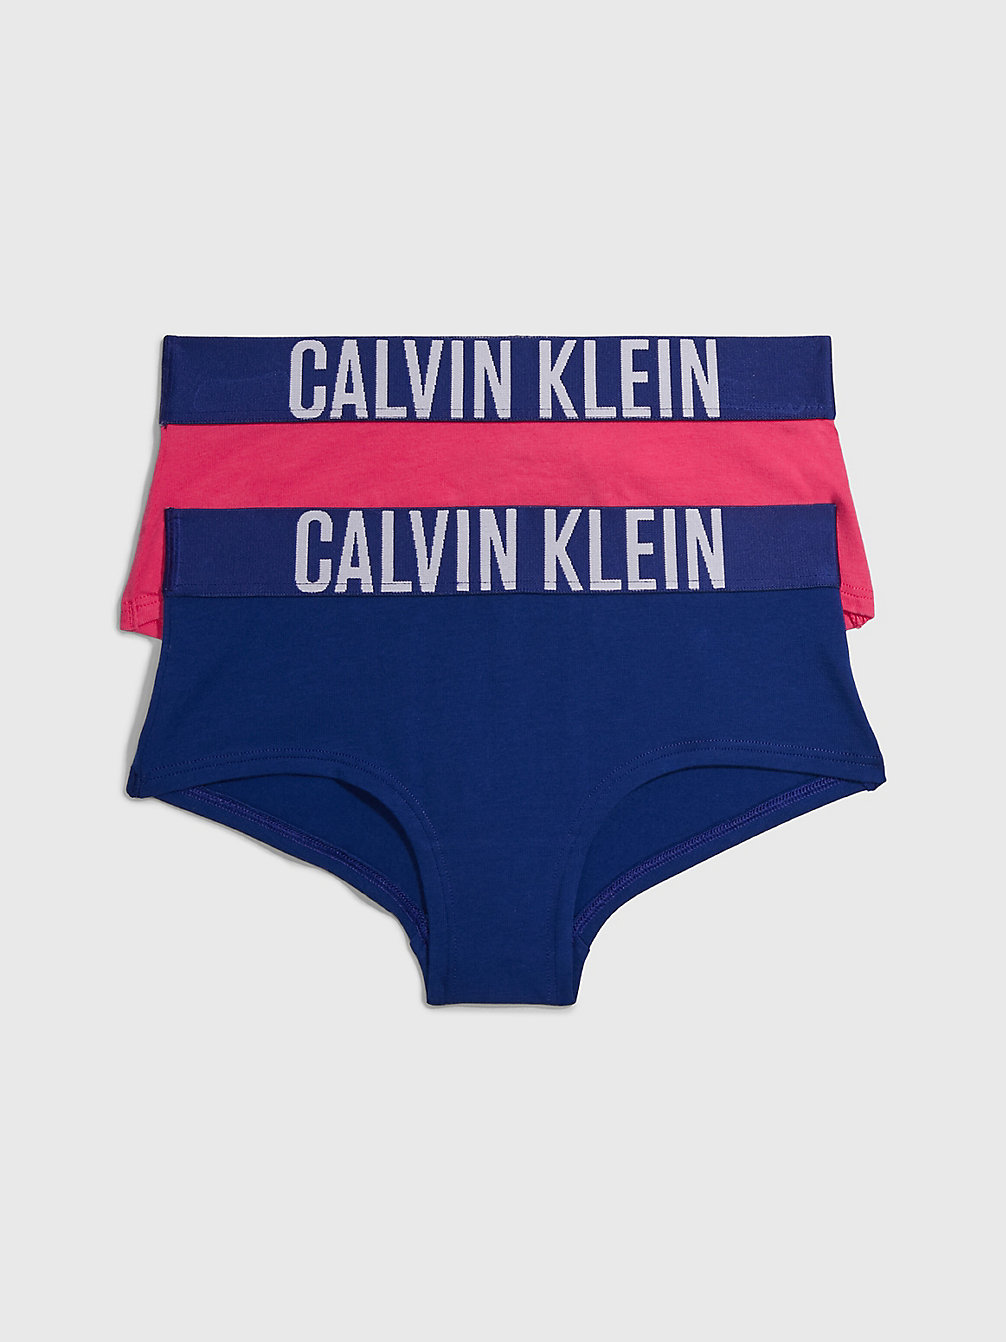 Girls' Underwear | Knickers, Bras & Sets | Calvin Klein®